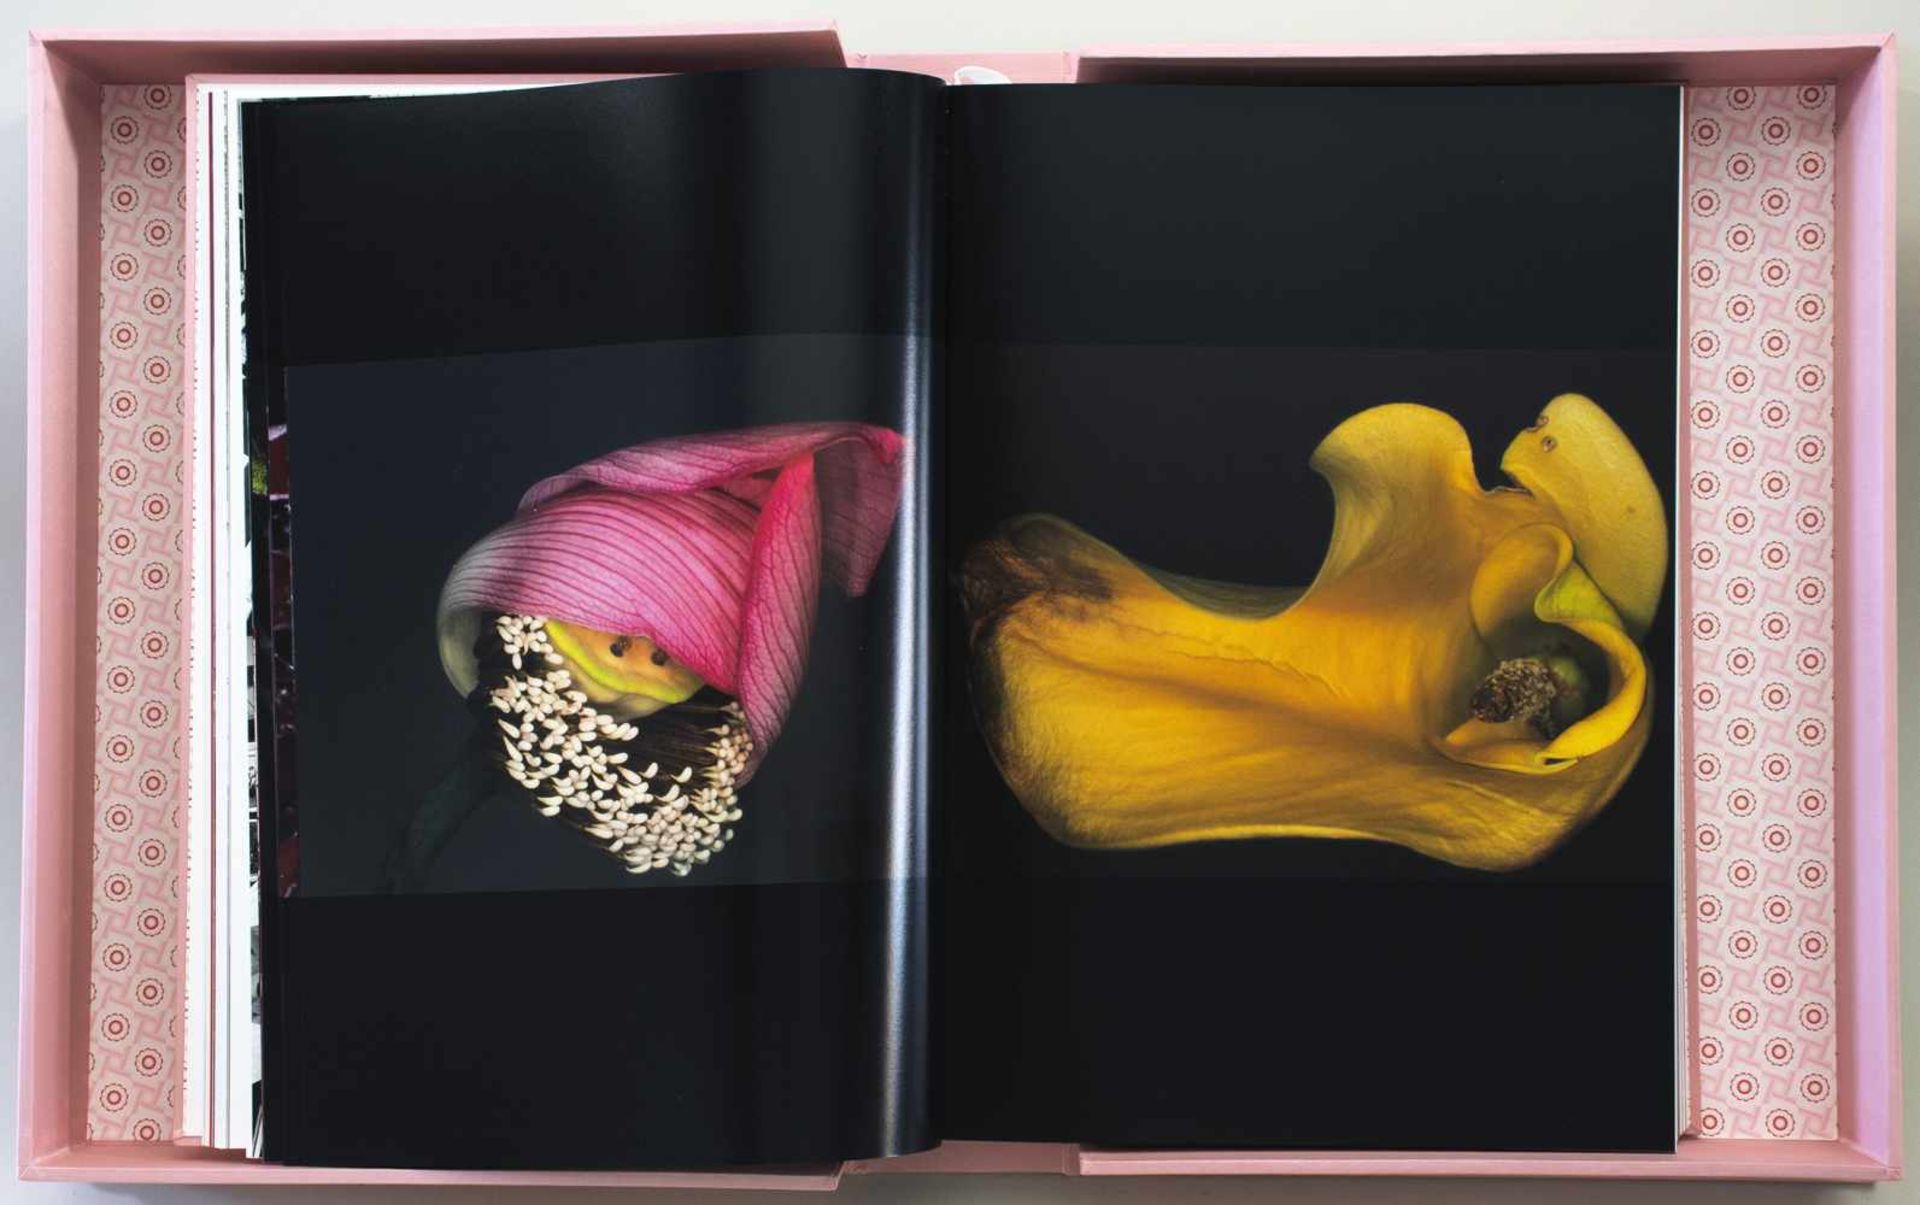 Fotobücher - Araki. Köln u. a., Taschen 2001. Mit unzähligen farbigen Abbildungen nach - Bild 3 aus 4